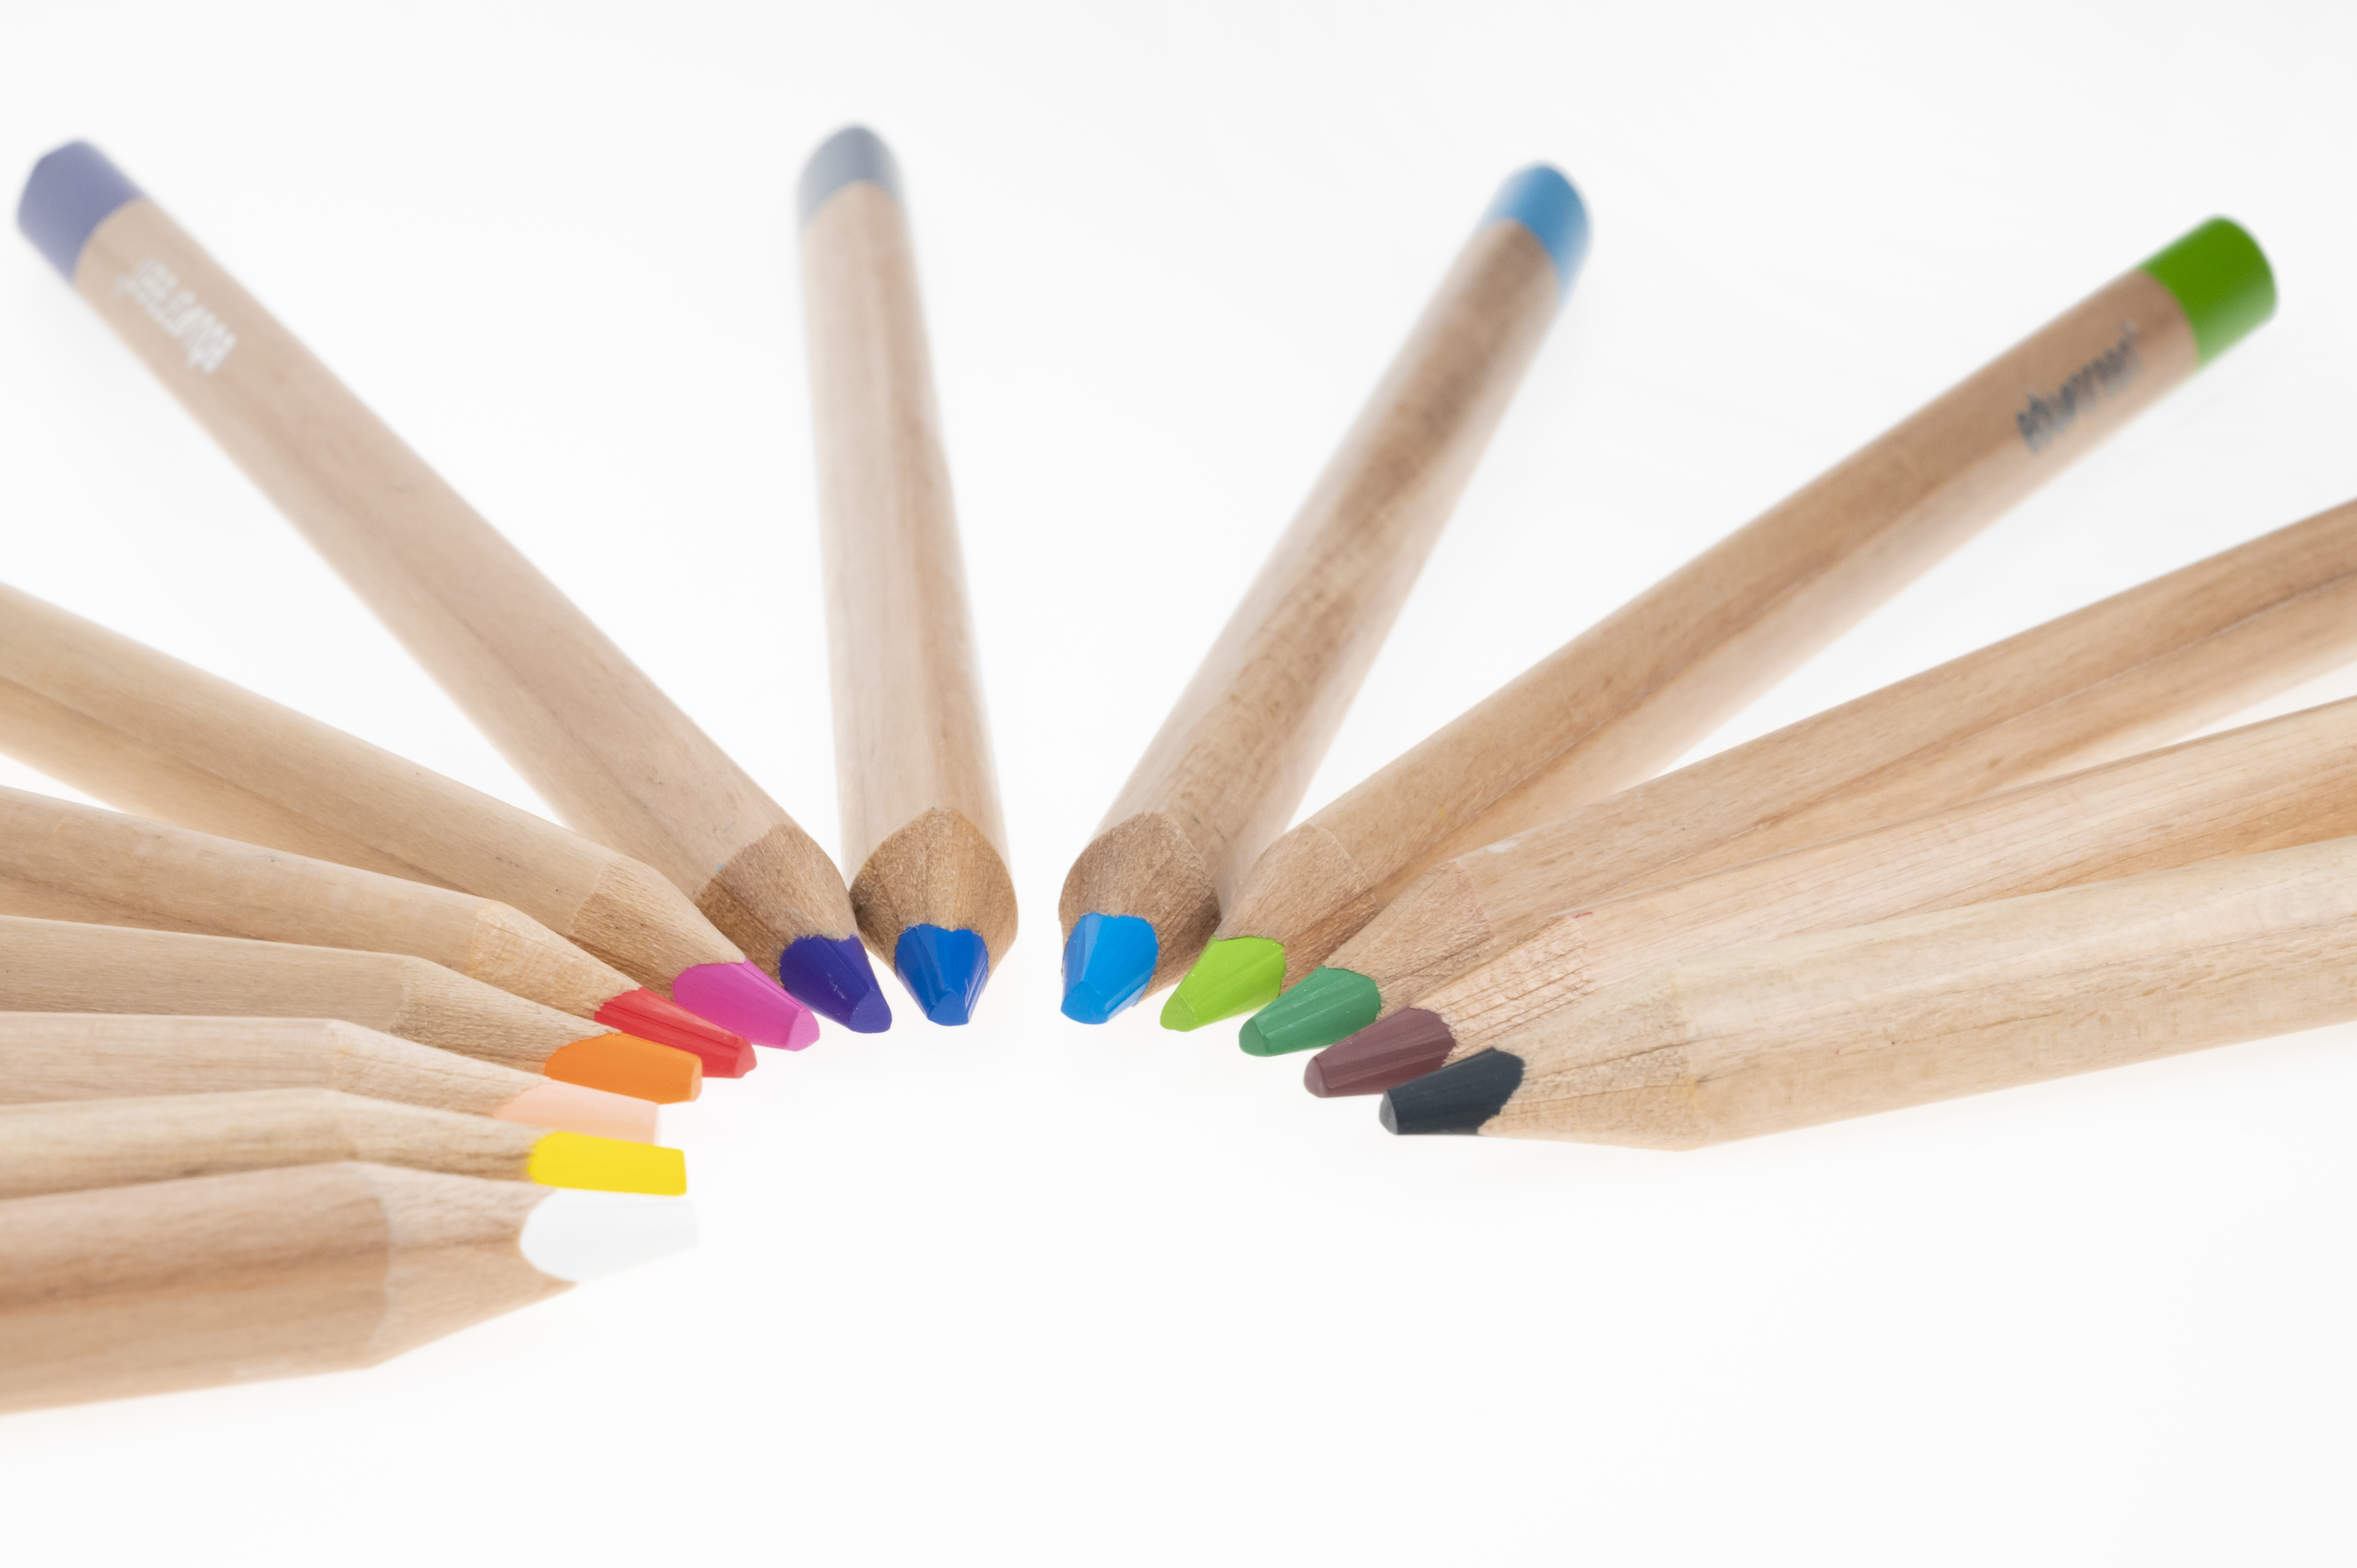 edugreen colored pencil tri round tube